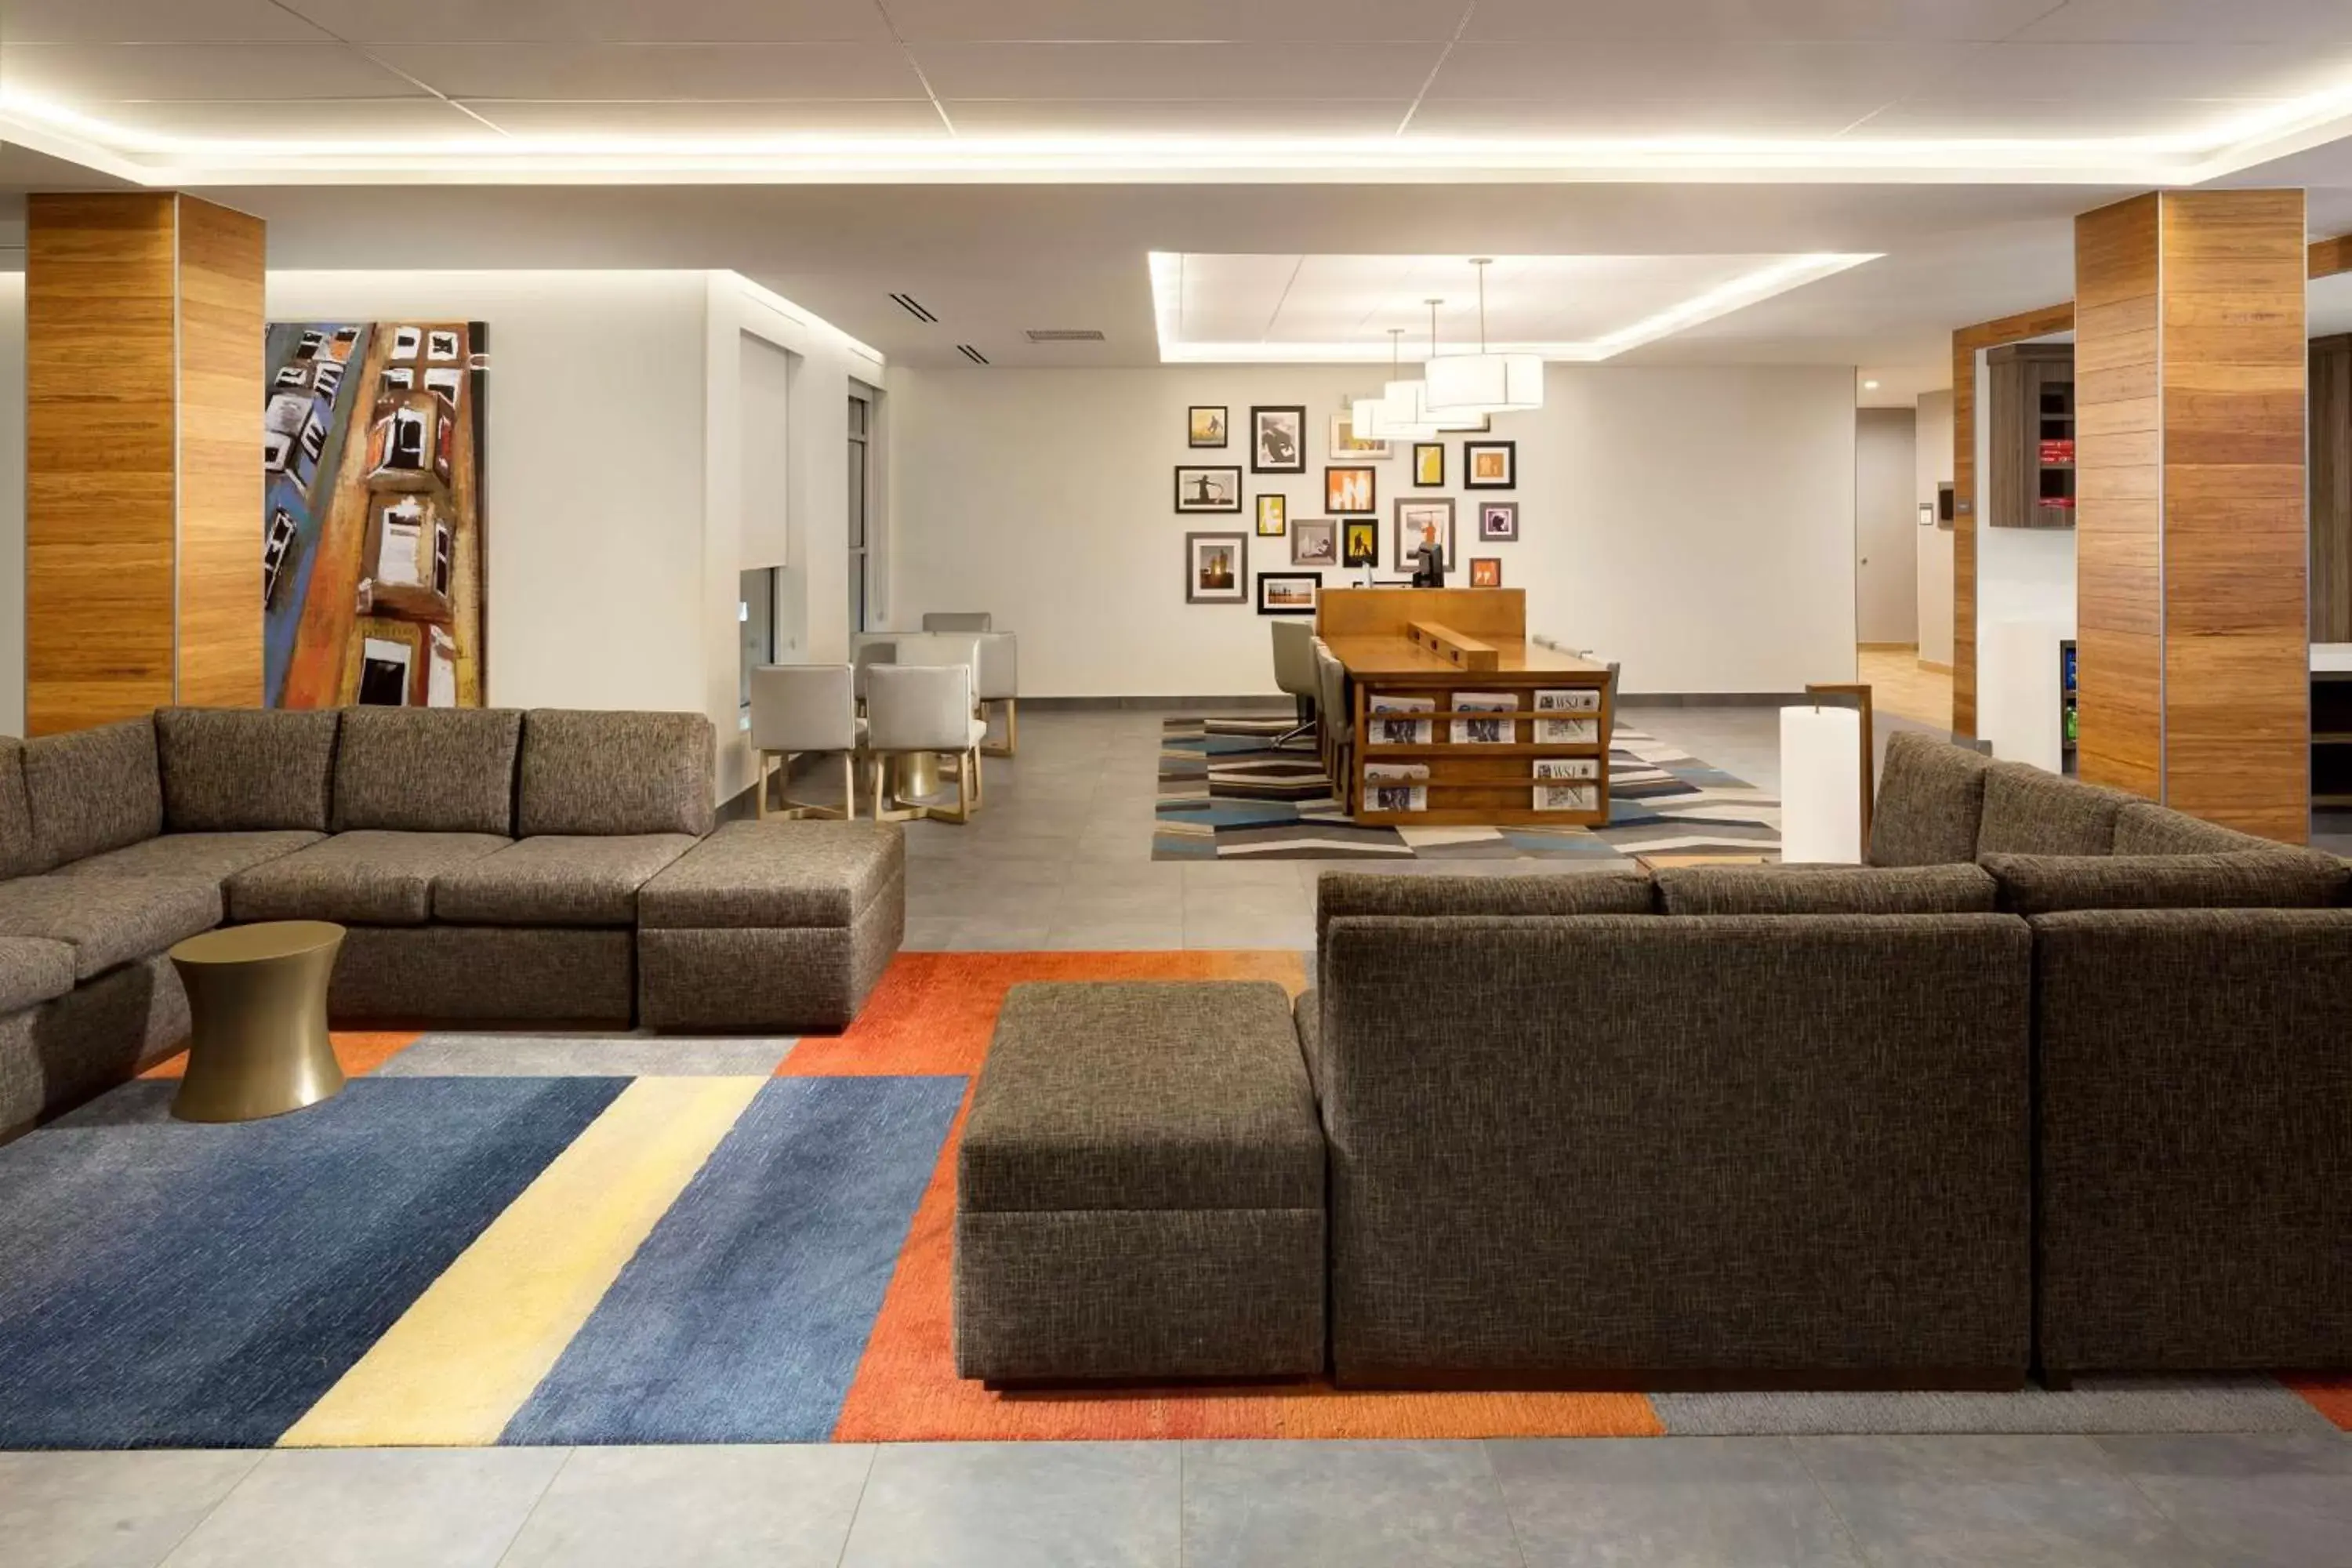 Lobby or reception in Hyatt House Dallas / Frisco